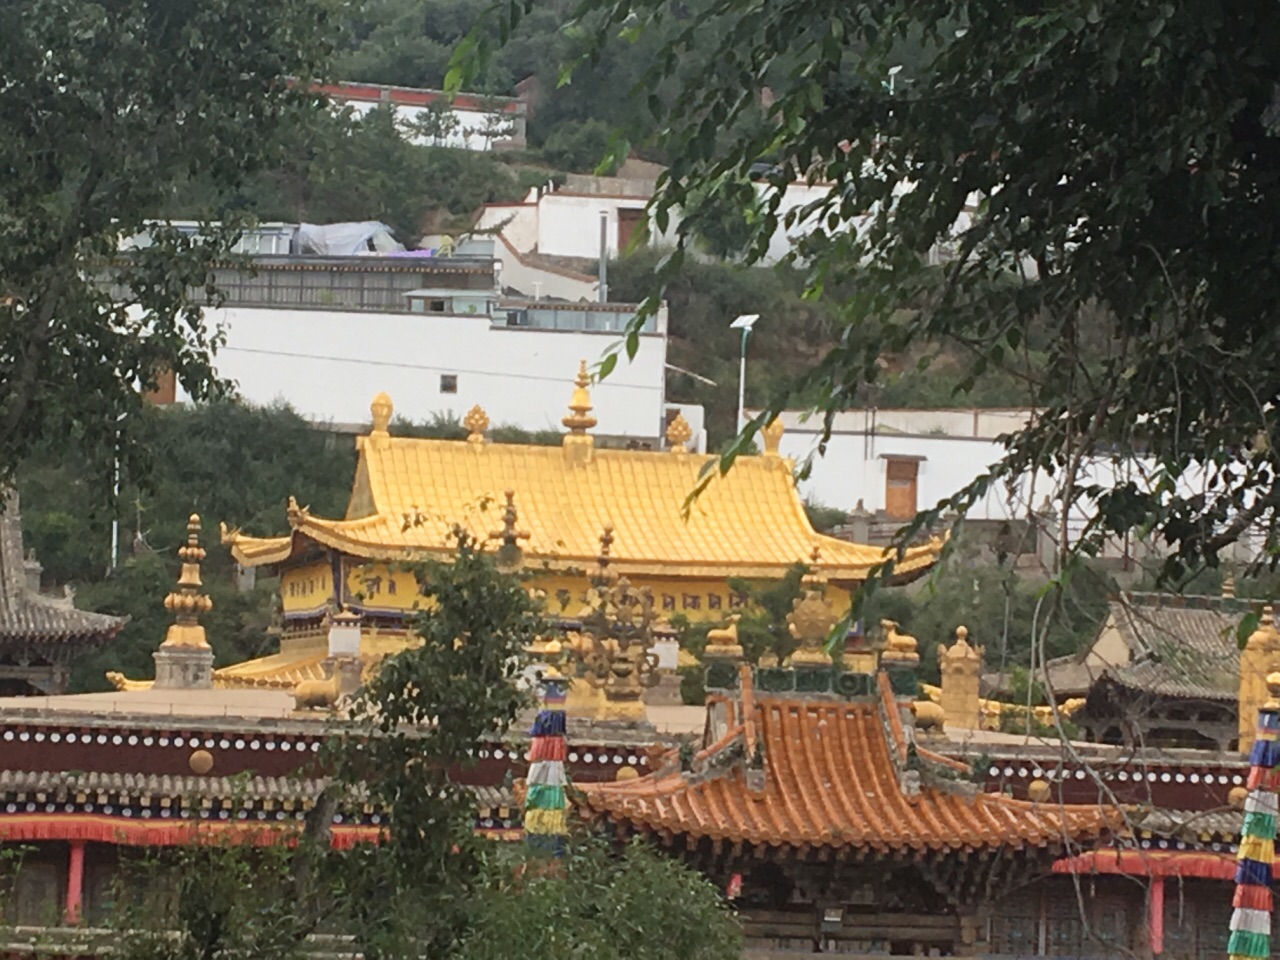 【携程攻略】西宁塔尔寺景点,到西宁是必去塔尔寺的。塔尔寺距西宁市区25公里，是中国藏传佛教格鲁…